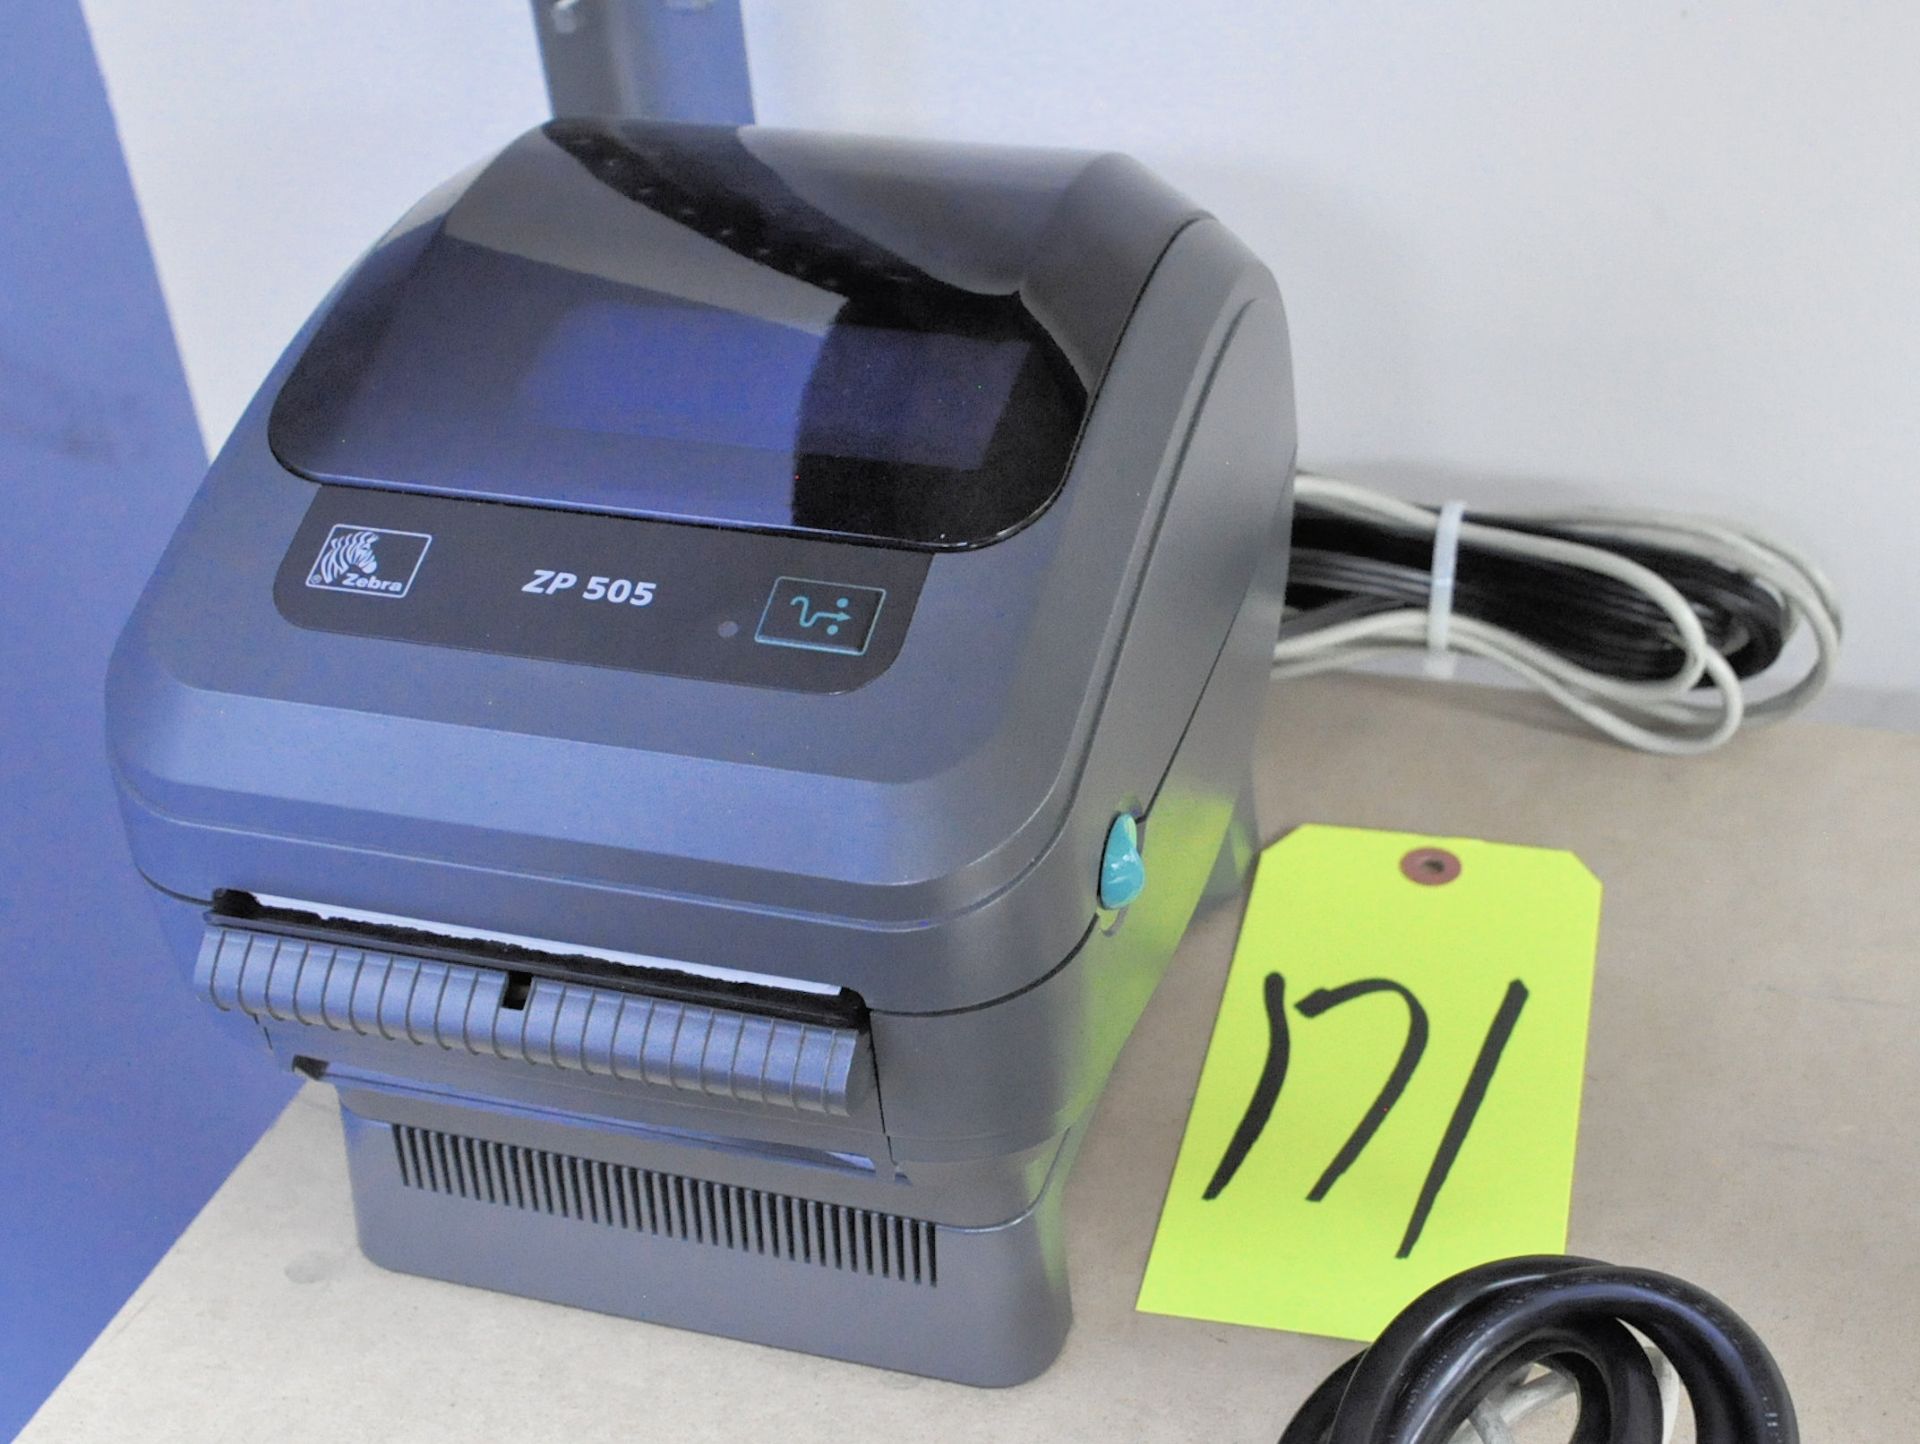 Zebra ZP505 Label Printer